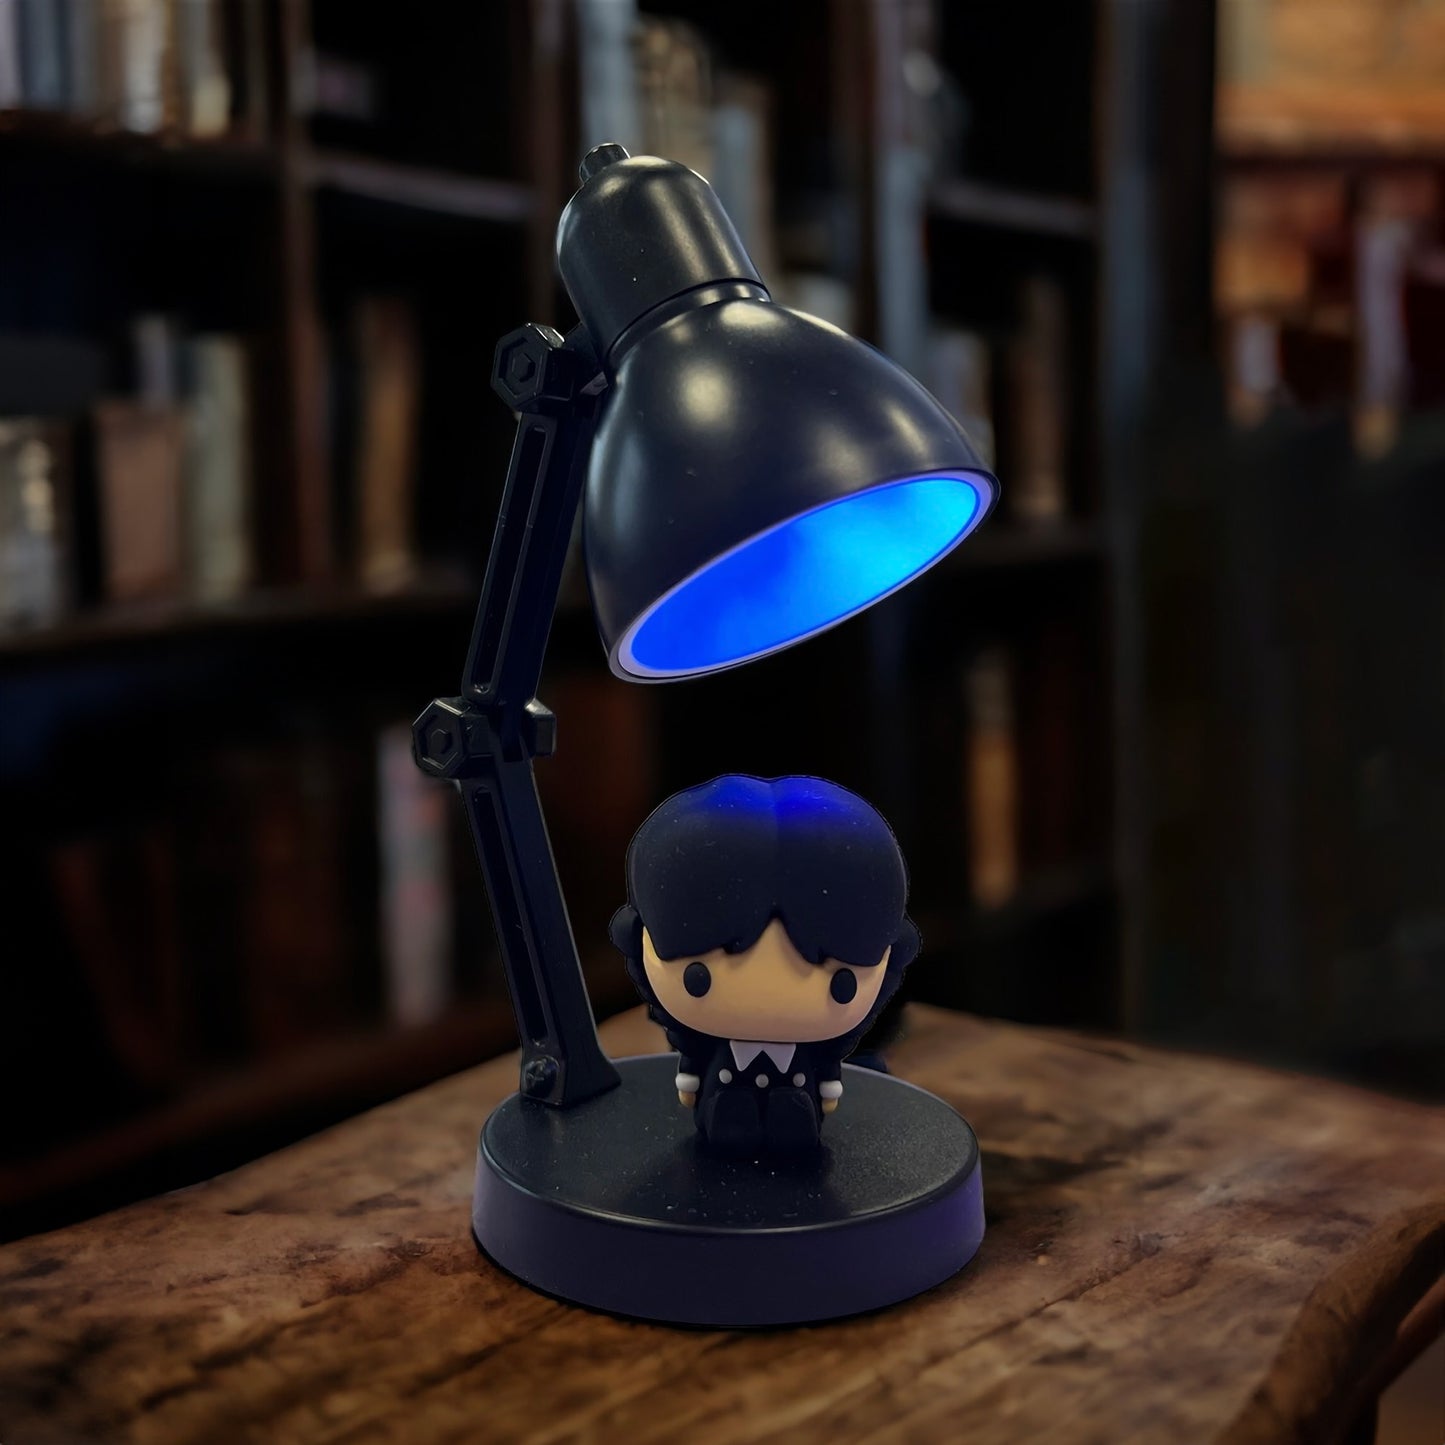 Wednesday Mini Lamp